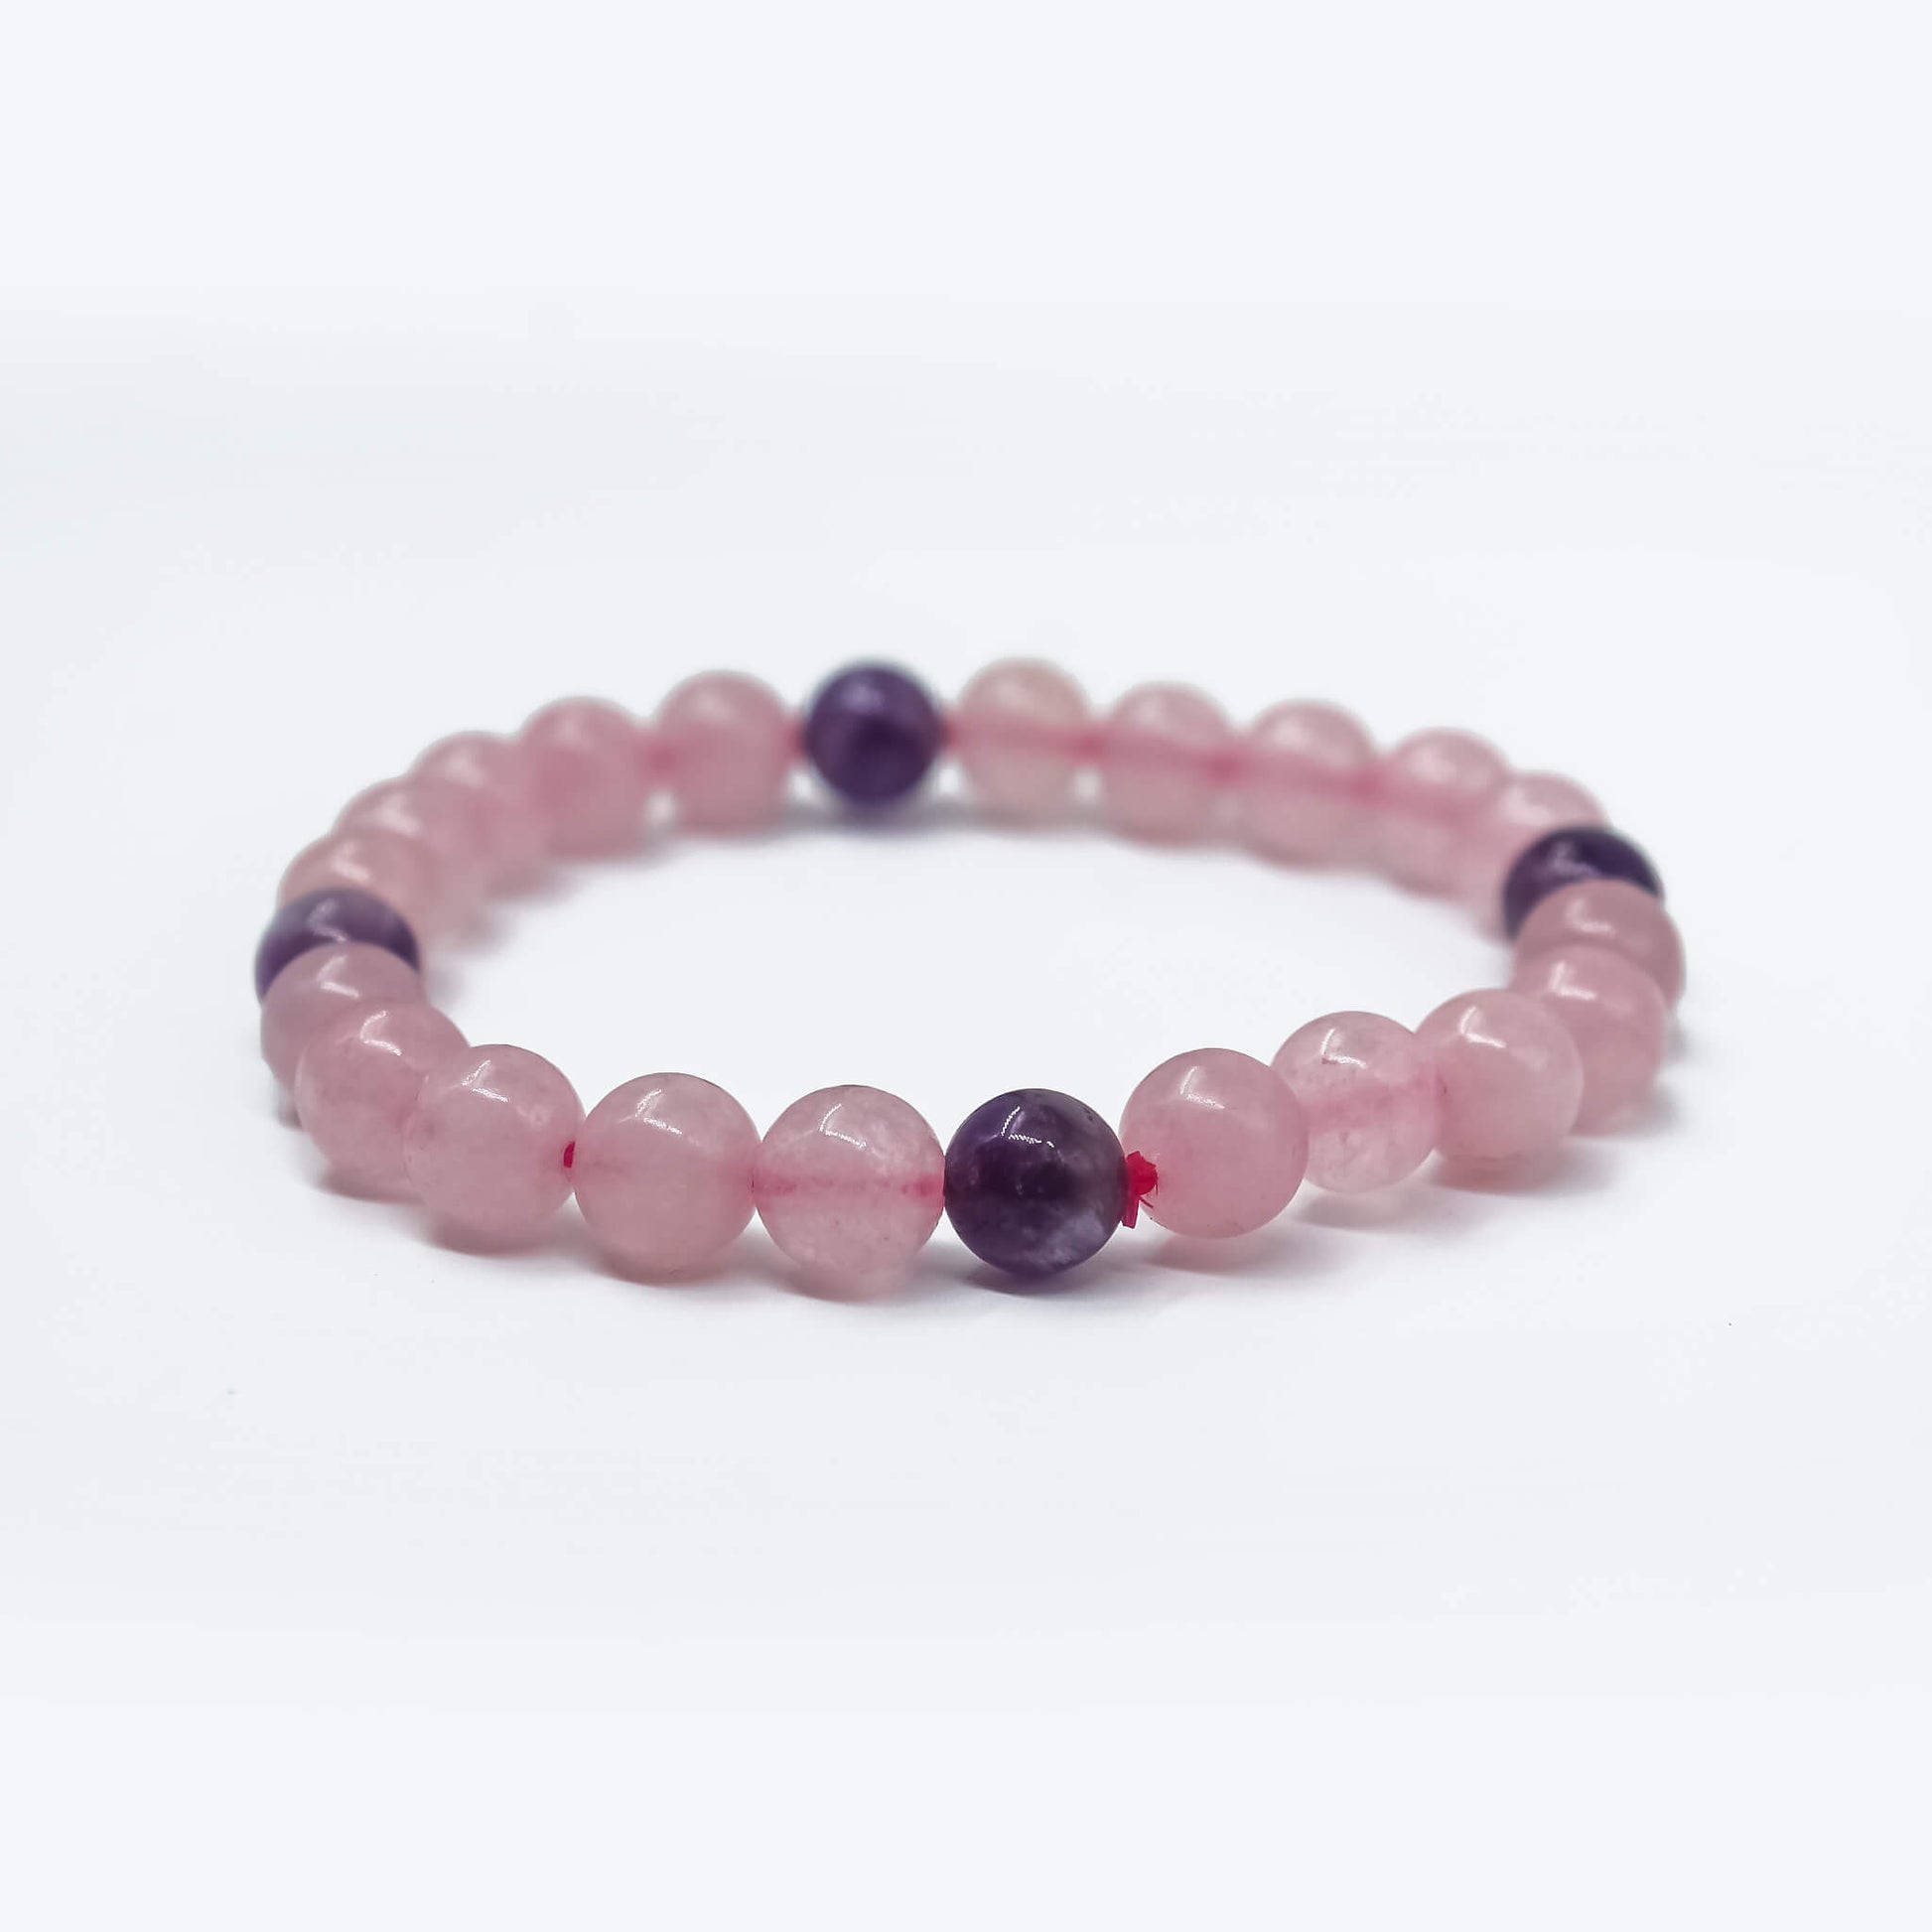 8 mm rose quartz and amethyst bracelet for women